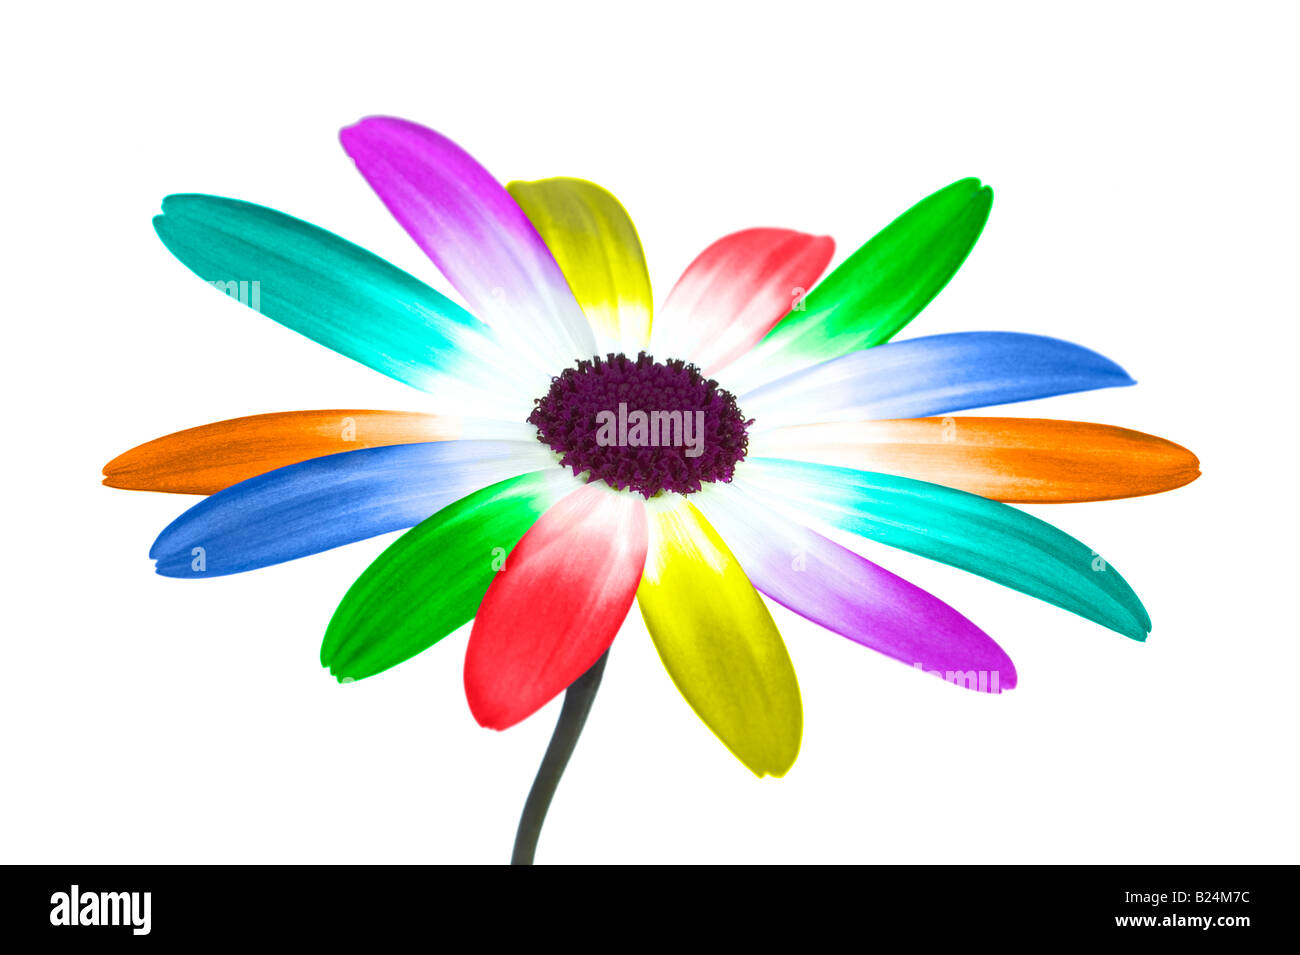 Imagen abstracta de margarita con sus pétalos en los colores del arco iris Foto de stock